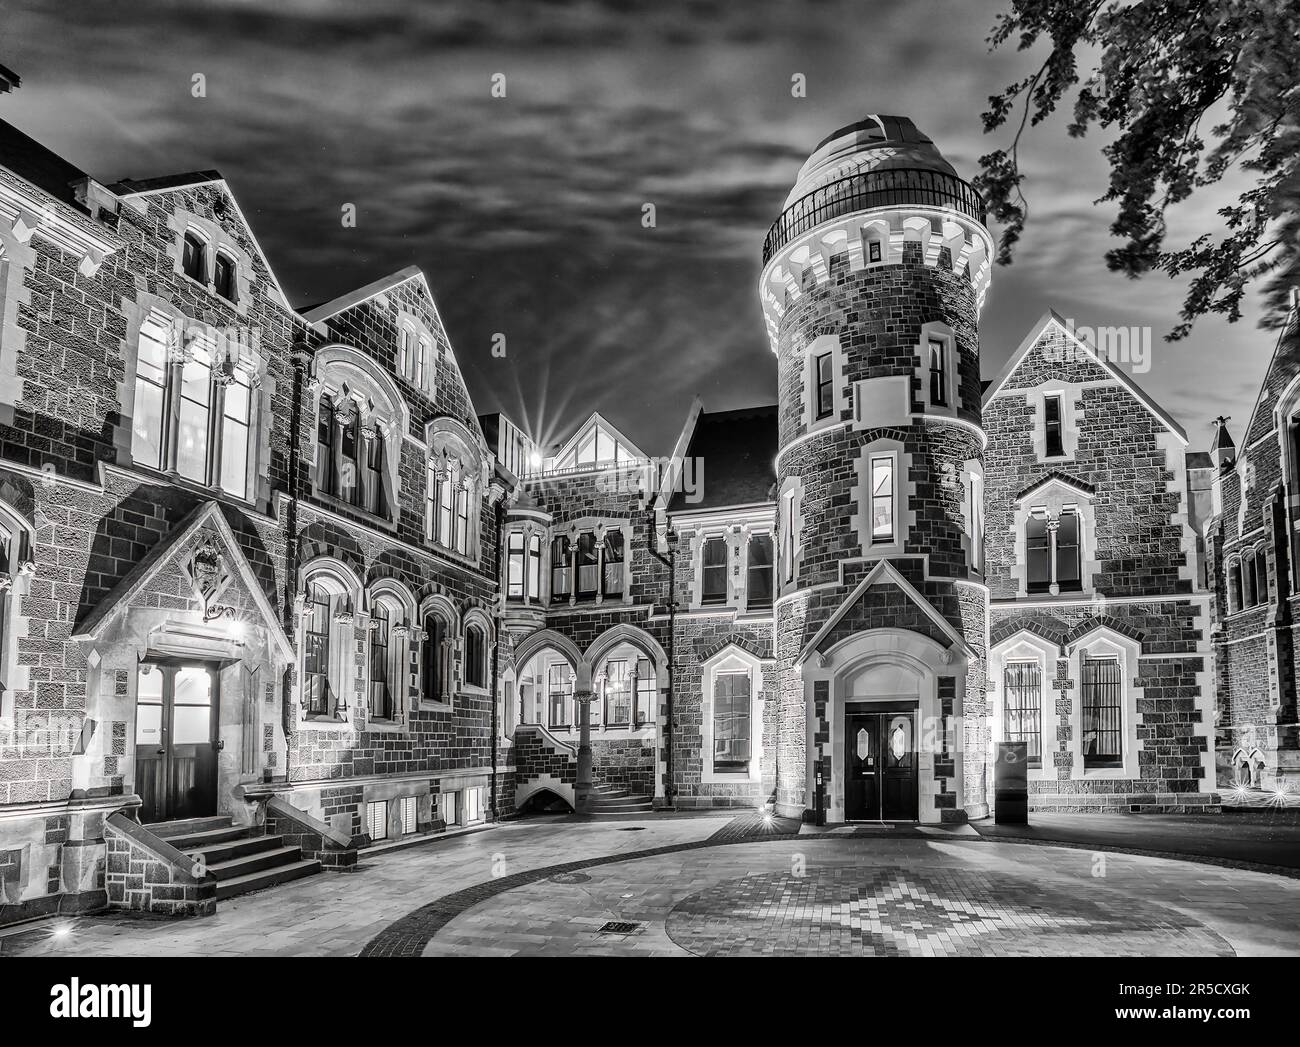 Drammatica architettura storica in bianco e nero degli edifici del campus universitario patrimonio della città di Christchurch, nella zona pubblica di notte Foto Stock